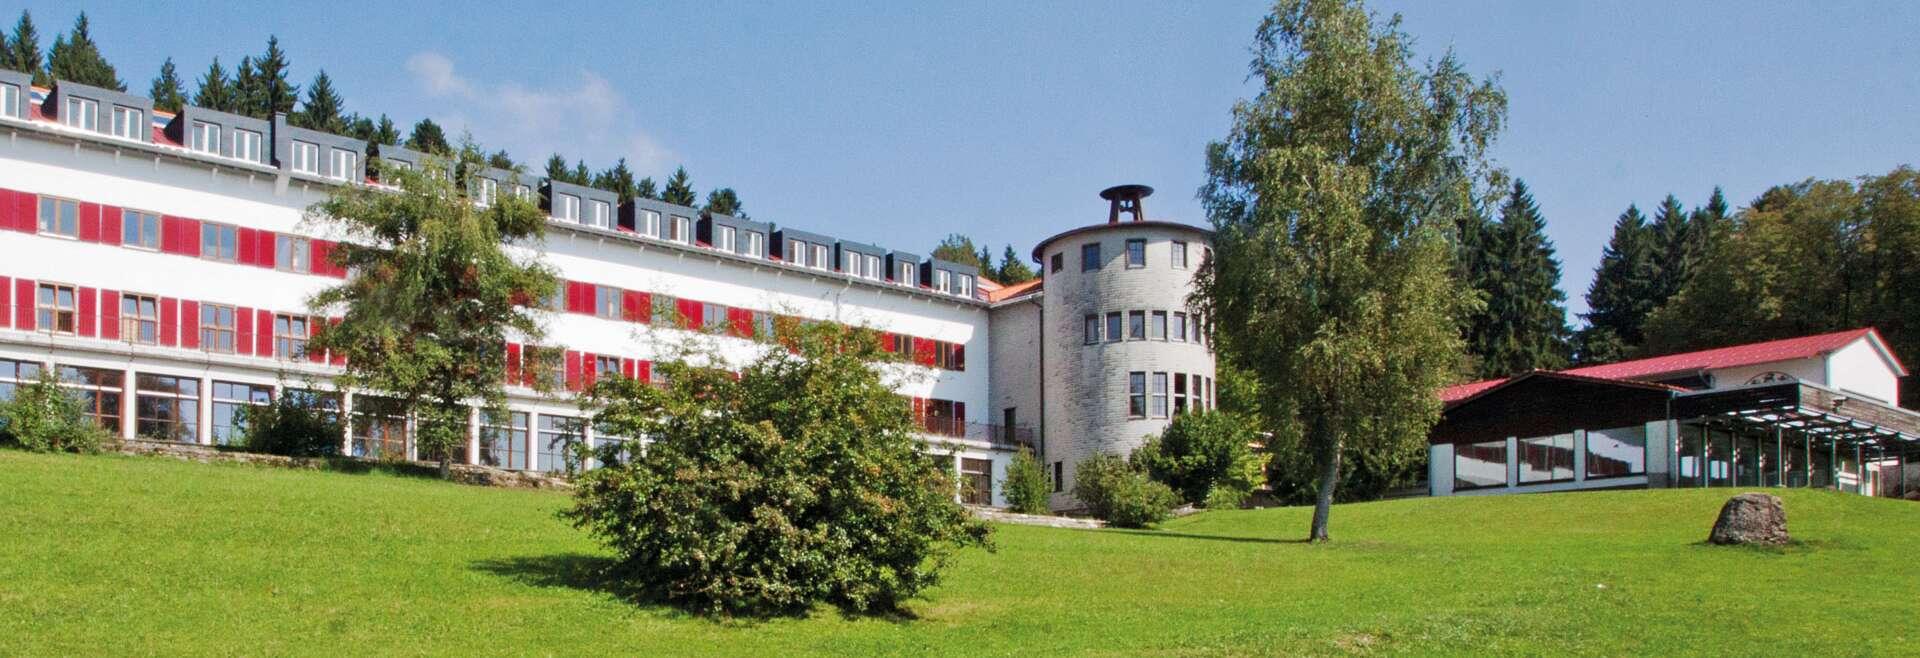 Sprachaufenthalt Deutschland, Lindenberg - Humboldt Institut Lindenberg - Schule